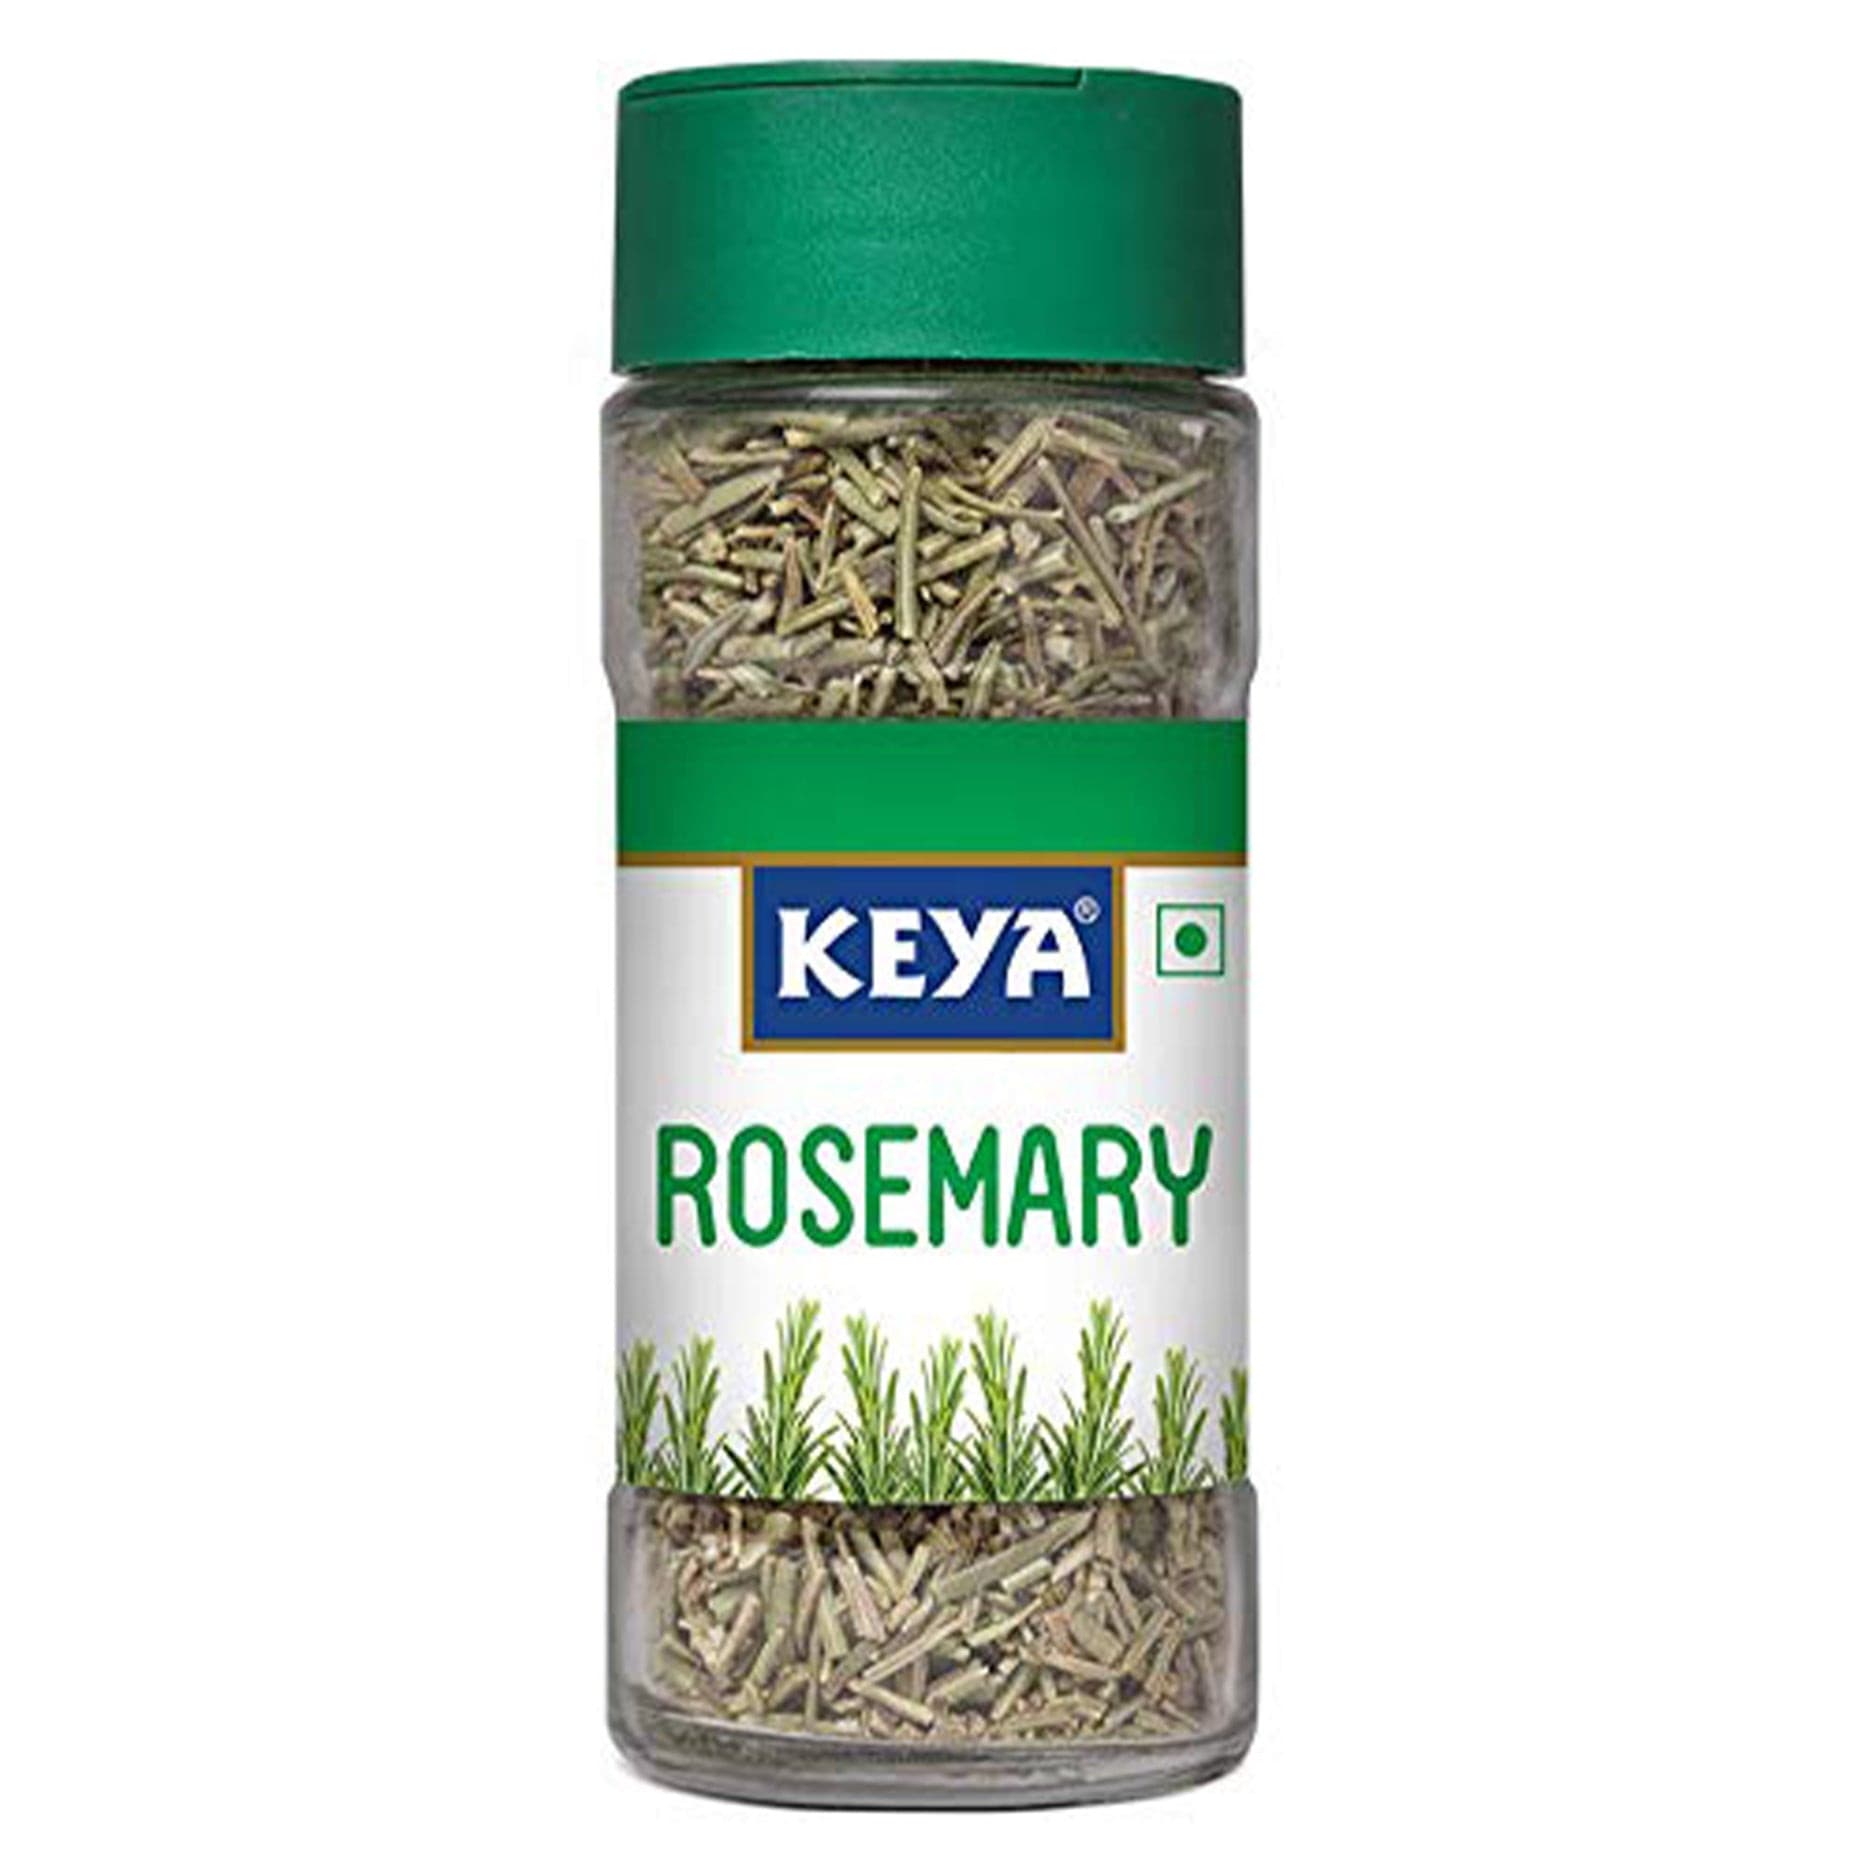 Keya Rosemary (7047389216955)